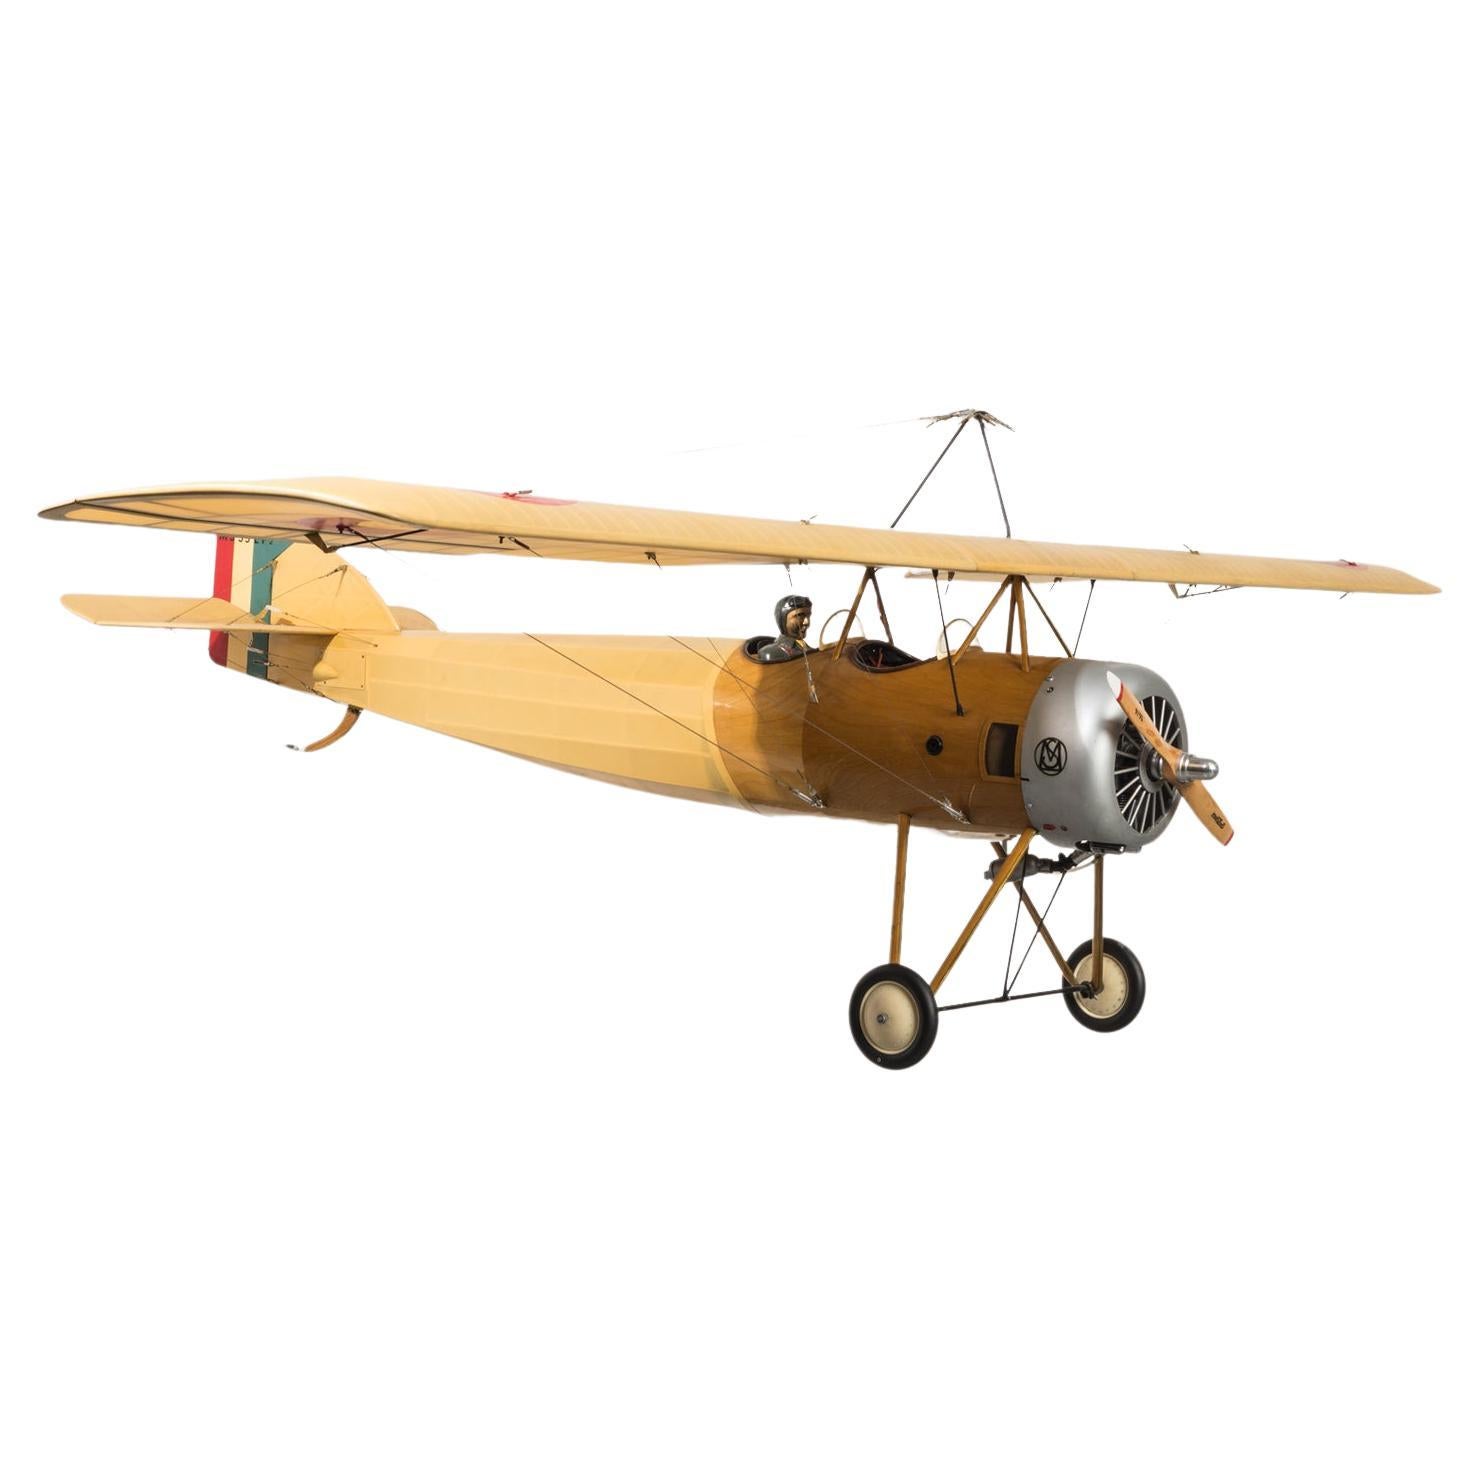 Maquette d'avion de la Première Guerre mondiale à grande échelle, réalisée à la main